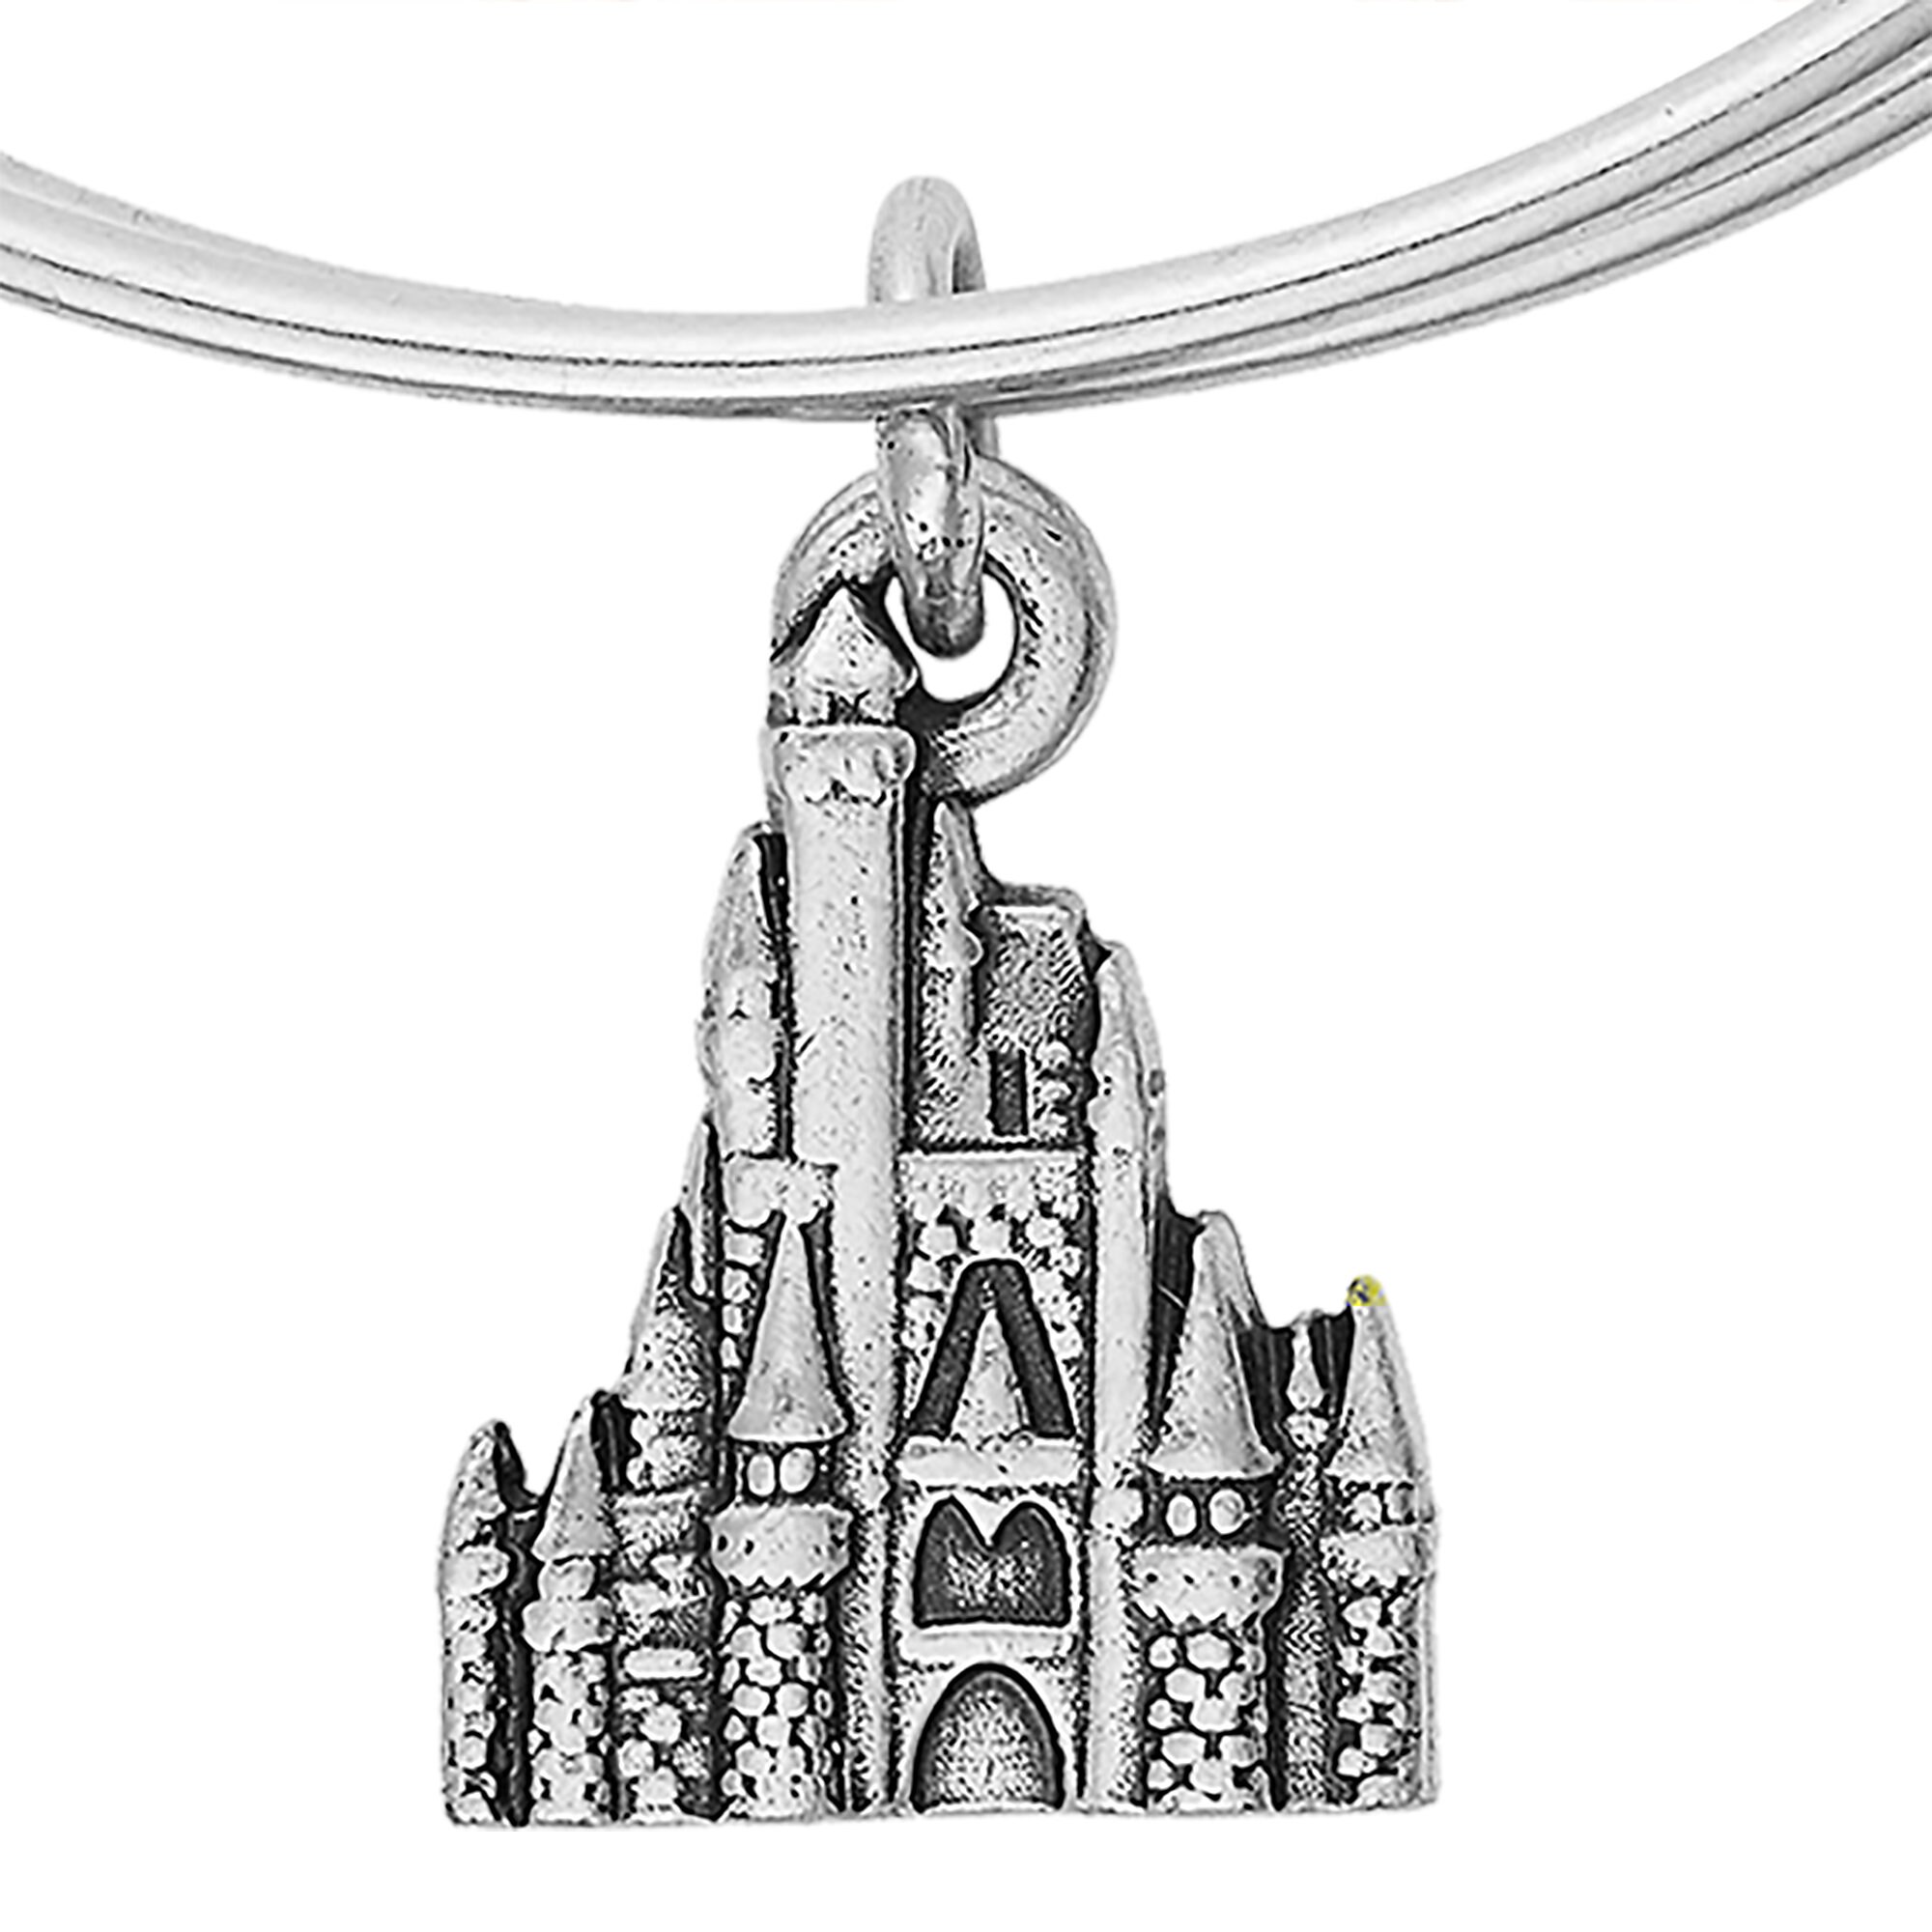 Cinderella Castle Figural Bangle by Alex and Ani